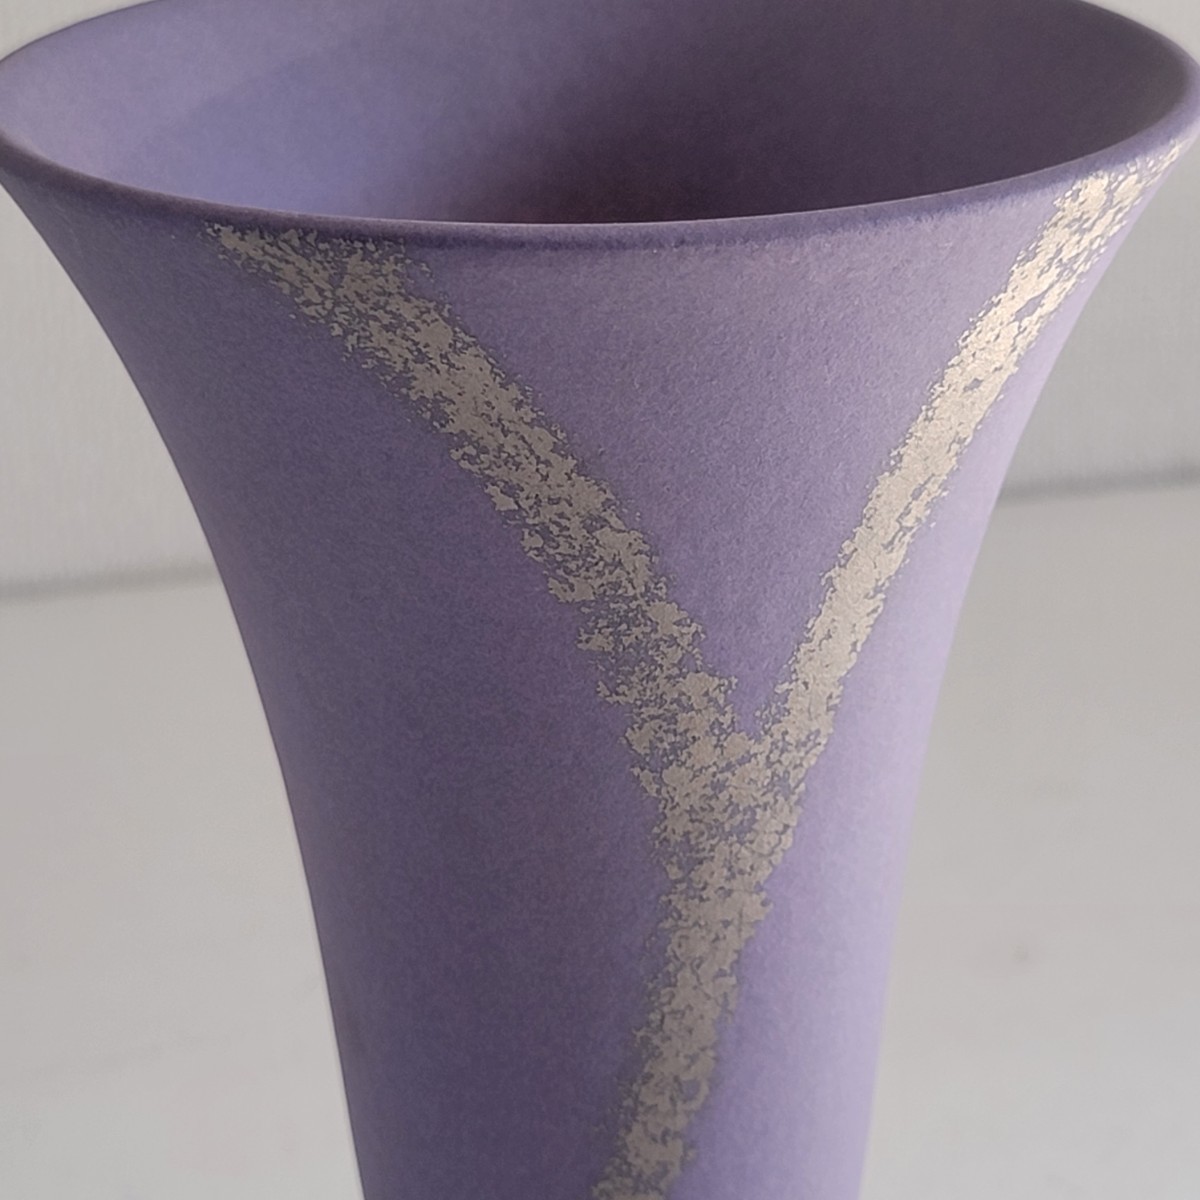  новый товар не использовался Kobayashi правильный Akira произведение .... Икэнобо золотой автор керамика . дорога .. место магазин товар Tachibana .. мир современный дизайн цветок основа ваза ваза для цветов 